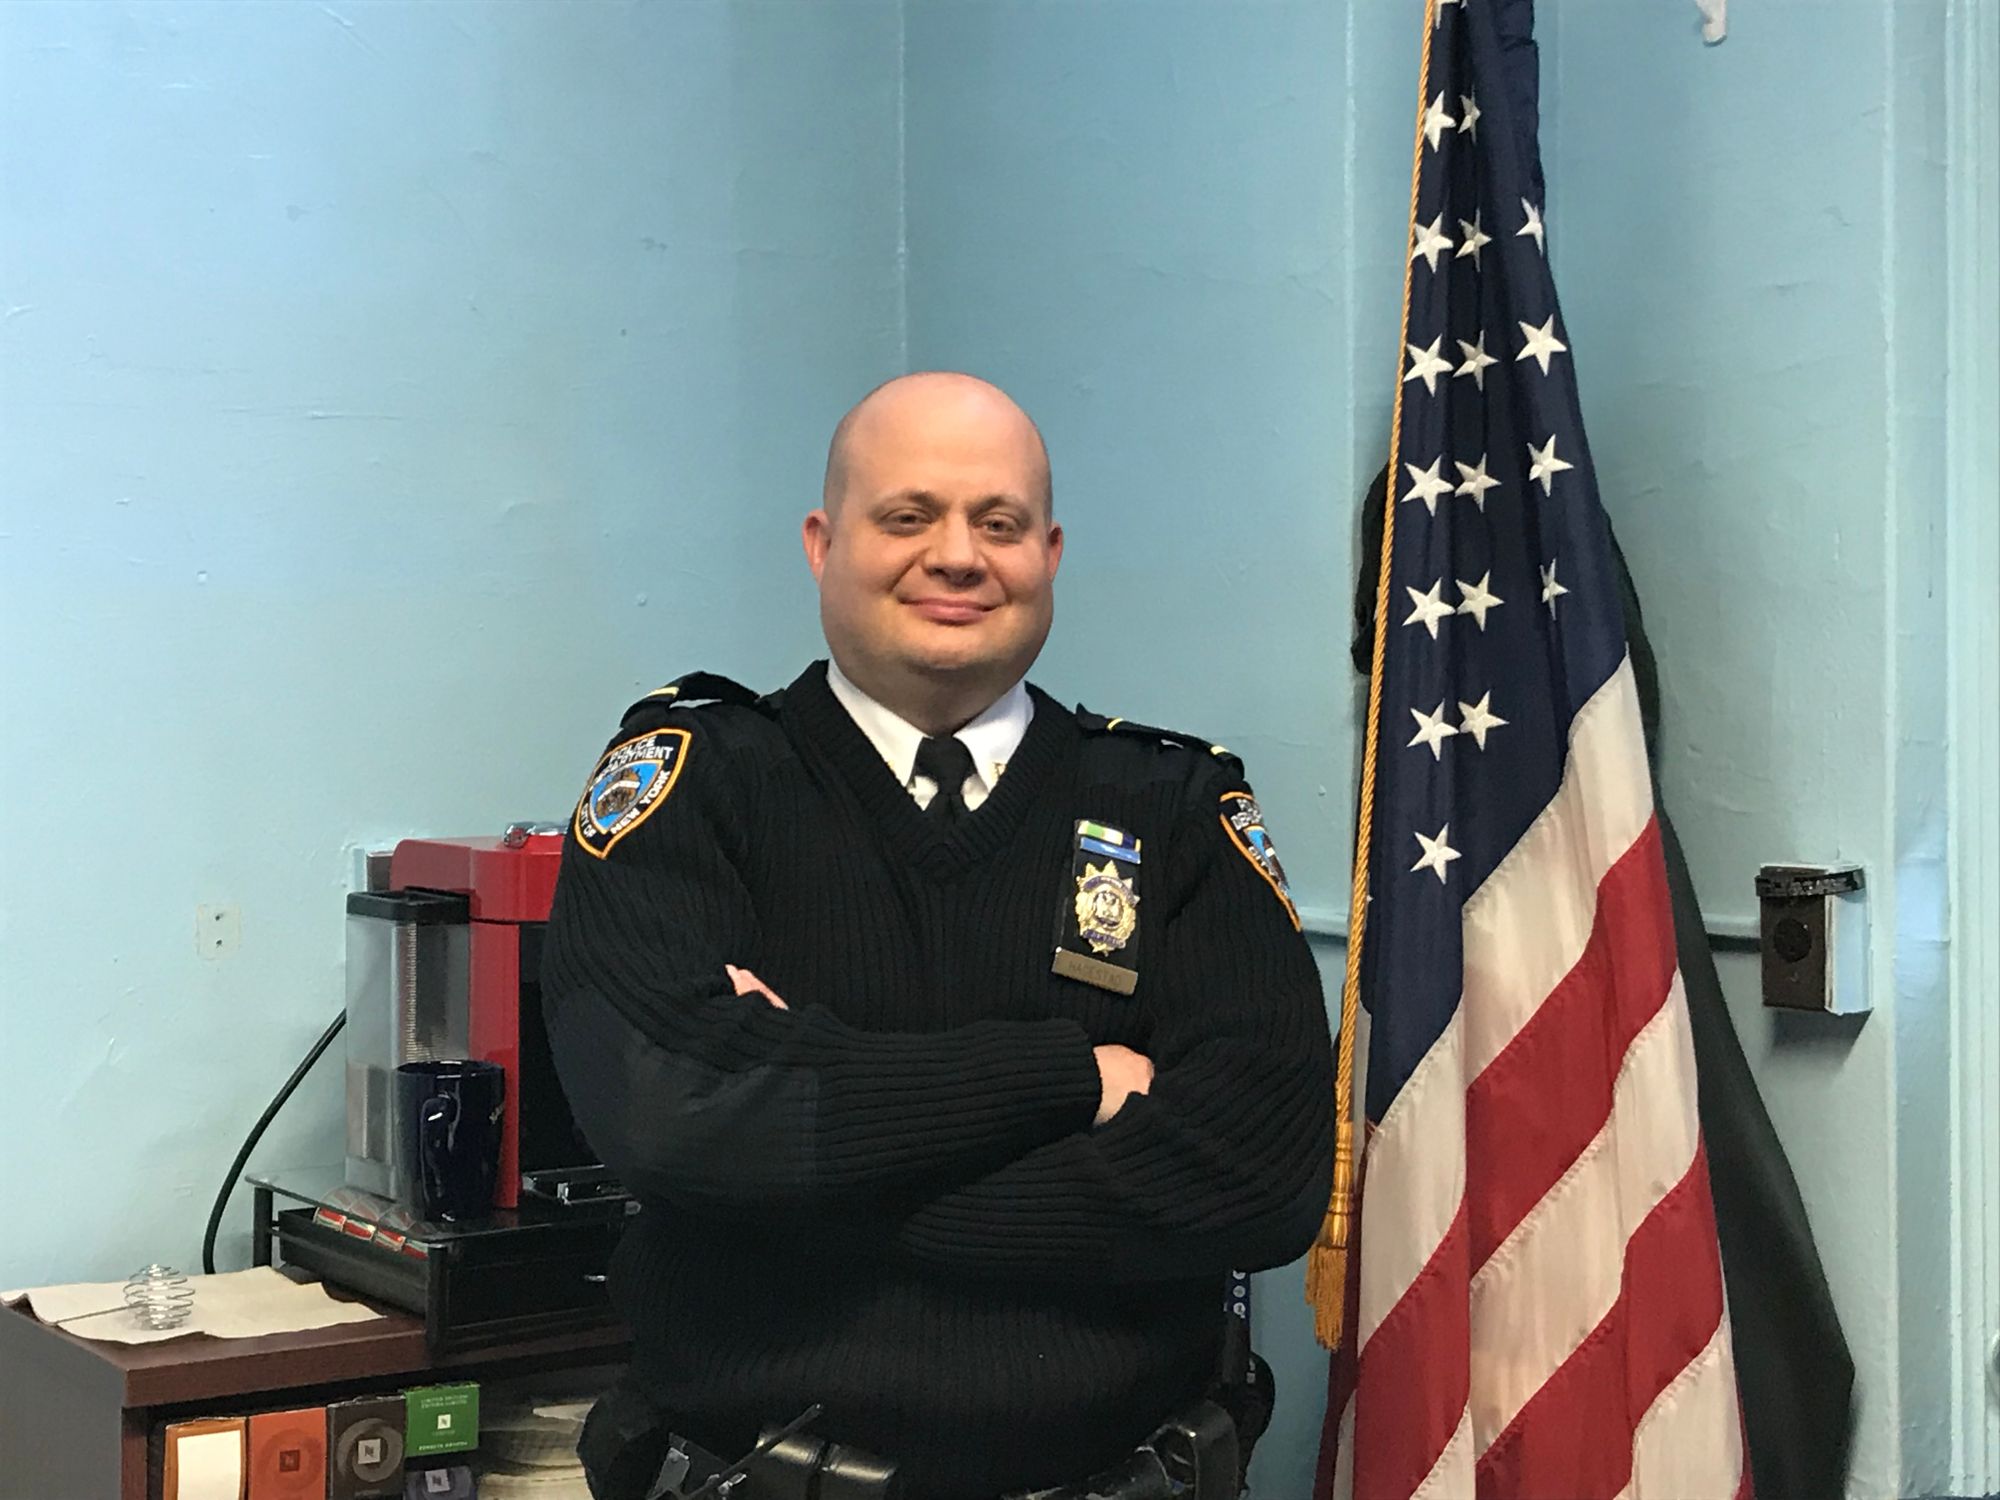 Meet The 78th Precinct’s New Commanding Officer